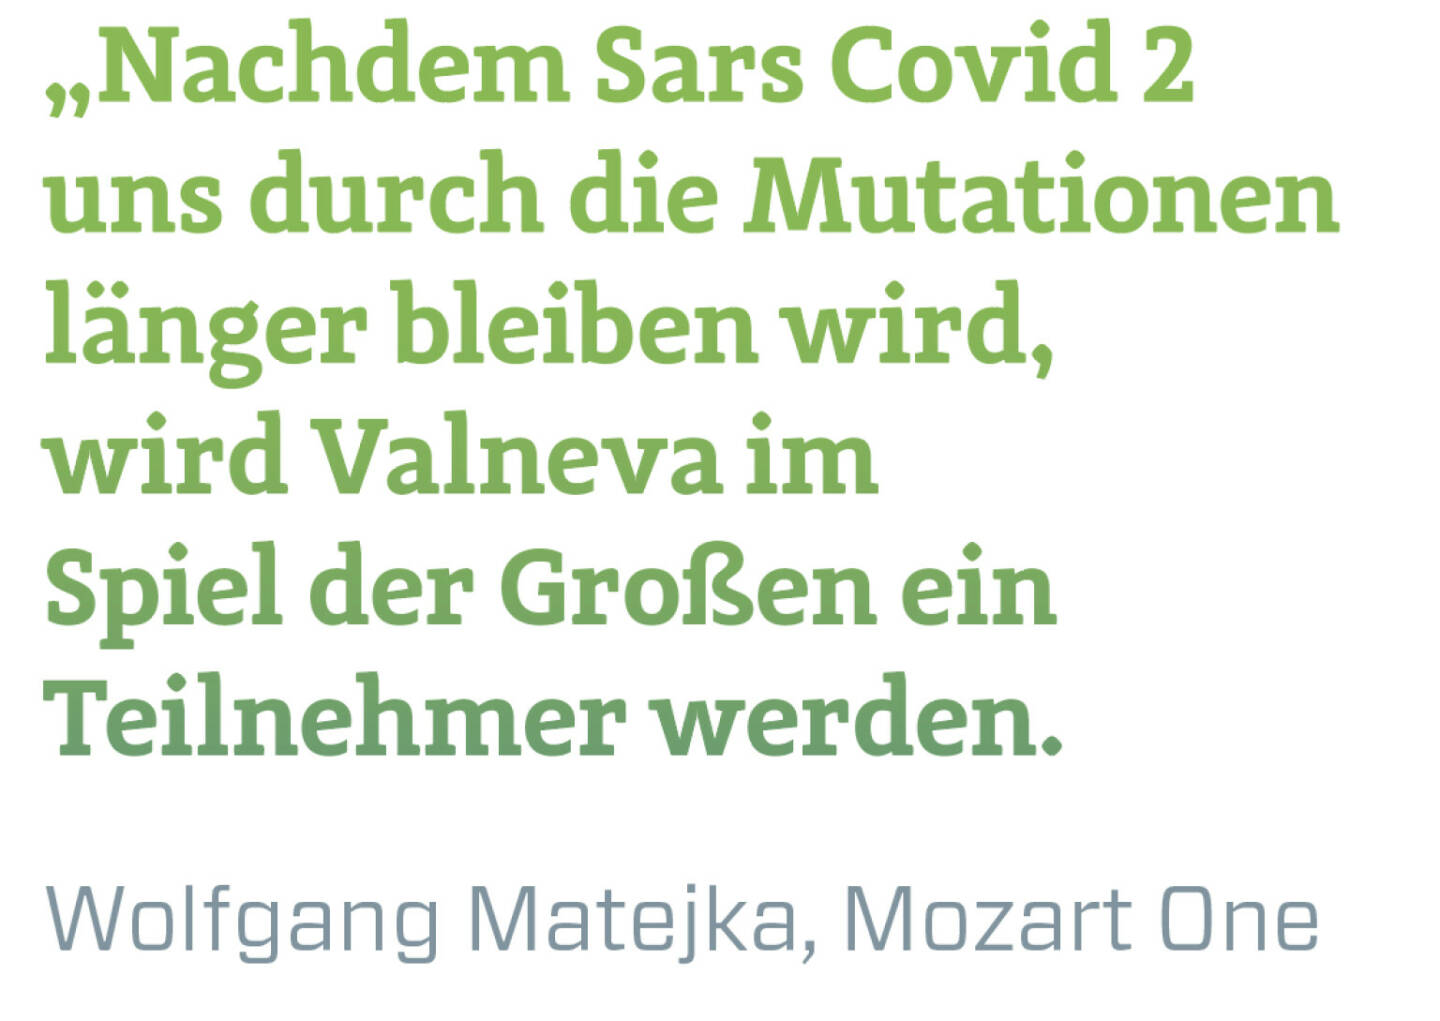 Nachdem Sars Covid 2 uns durch die Mutationen länger bleiben wird, wird Valneva im Spiel der Großen ein Teilnehmer werden.
Wolfgang Matejka, Mozart One
